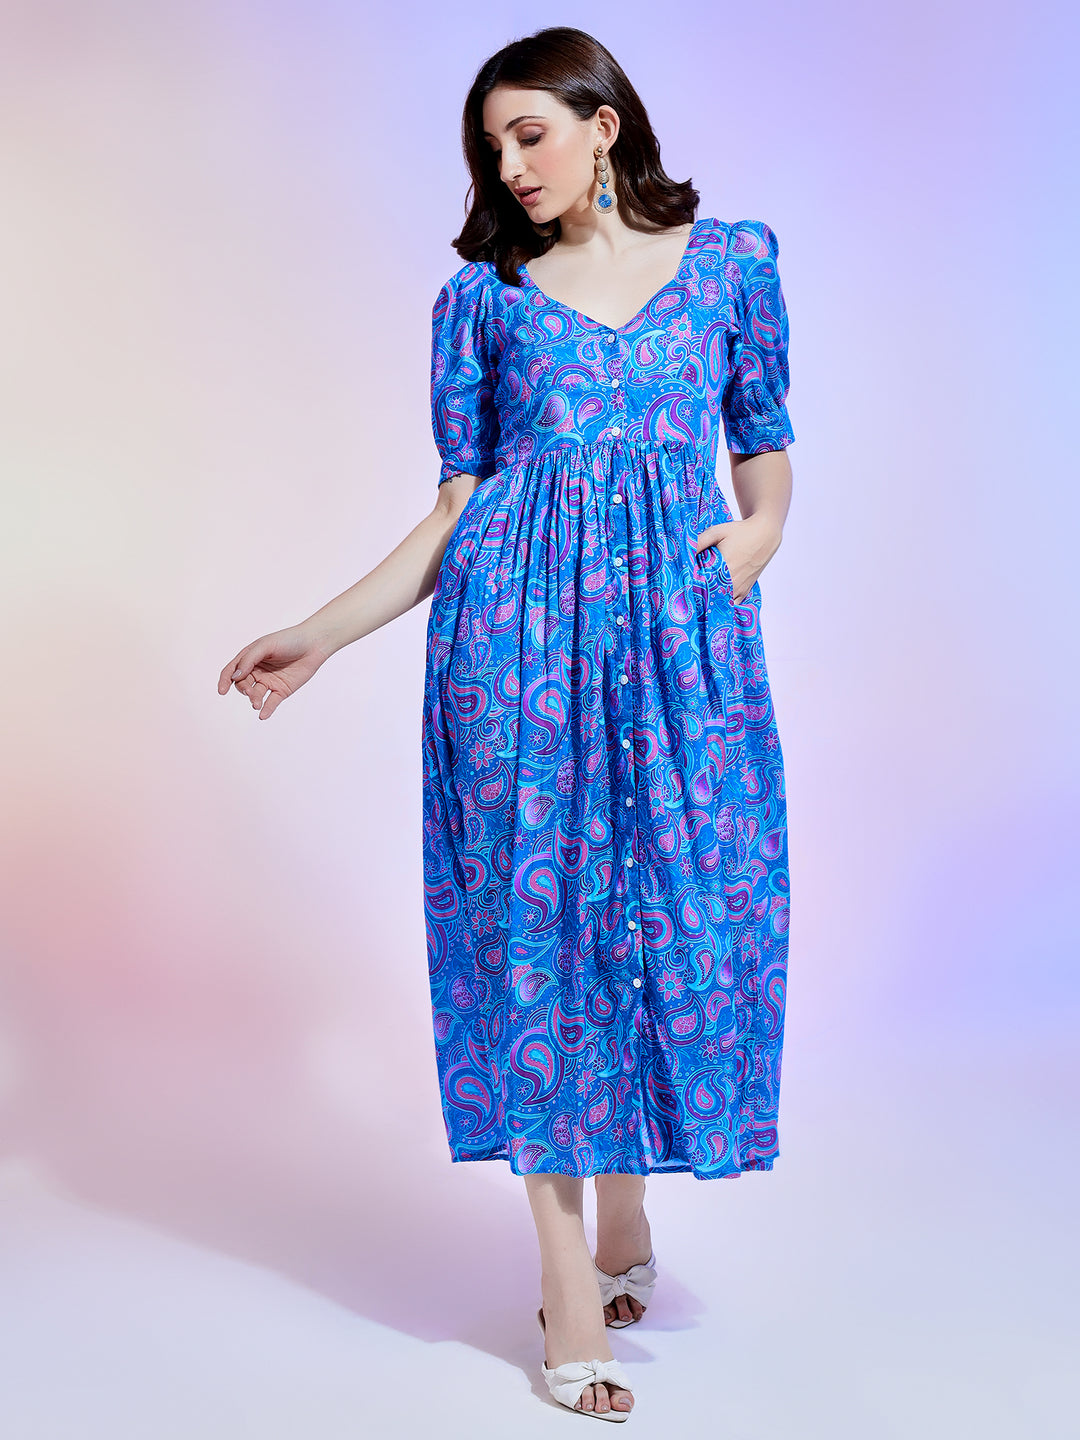 Blue Floral Dress with side pocket